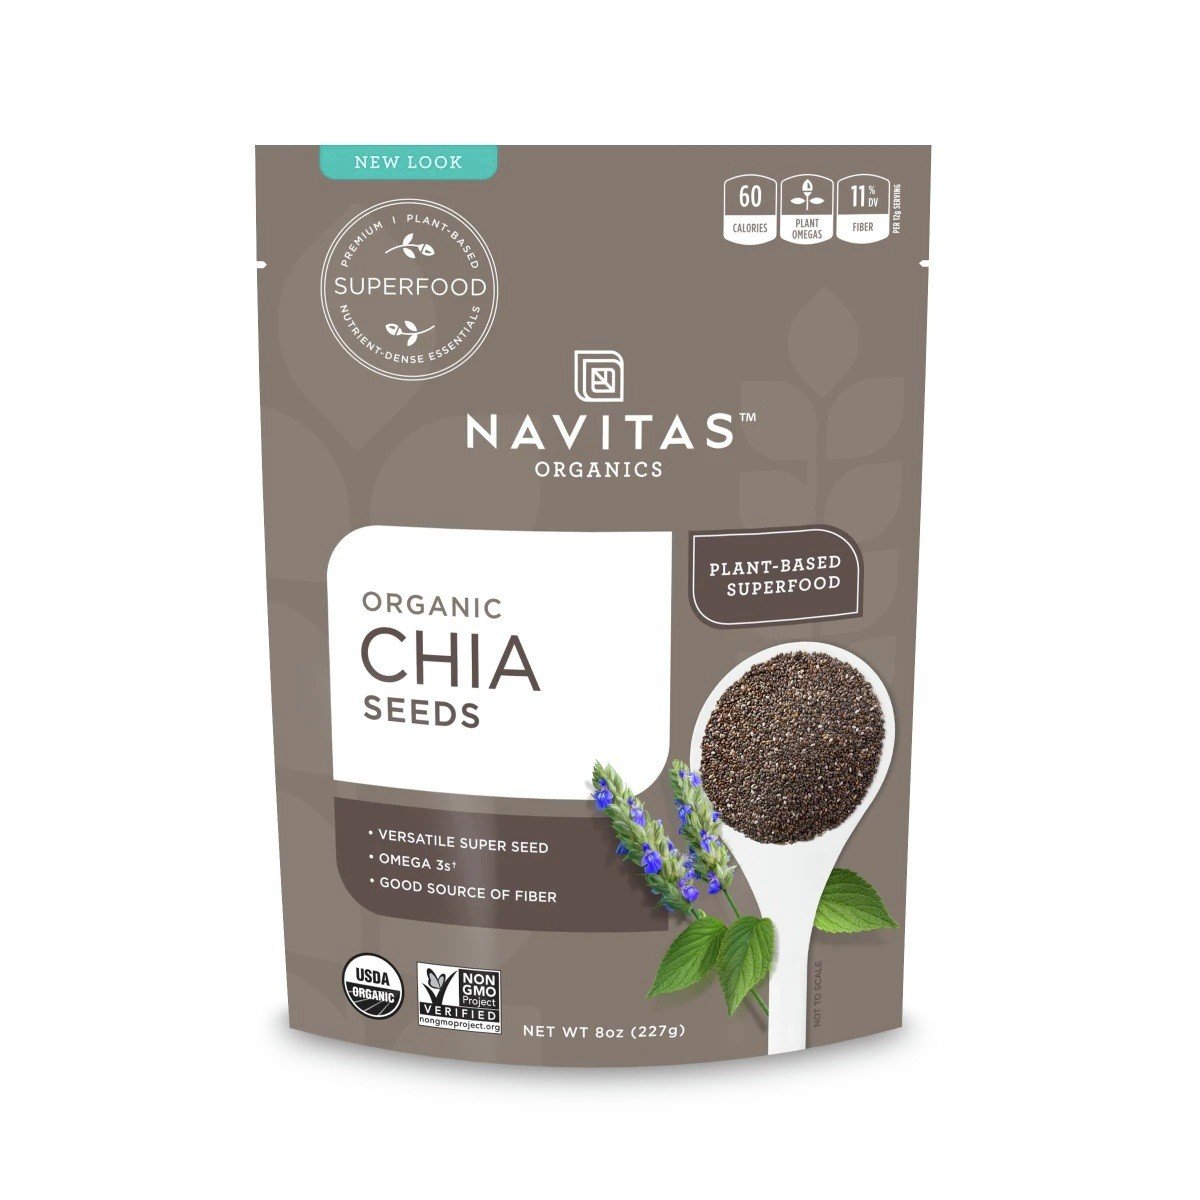 Navitas Chia Seeds Organic 16 oz Seed